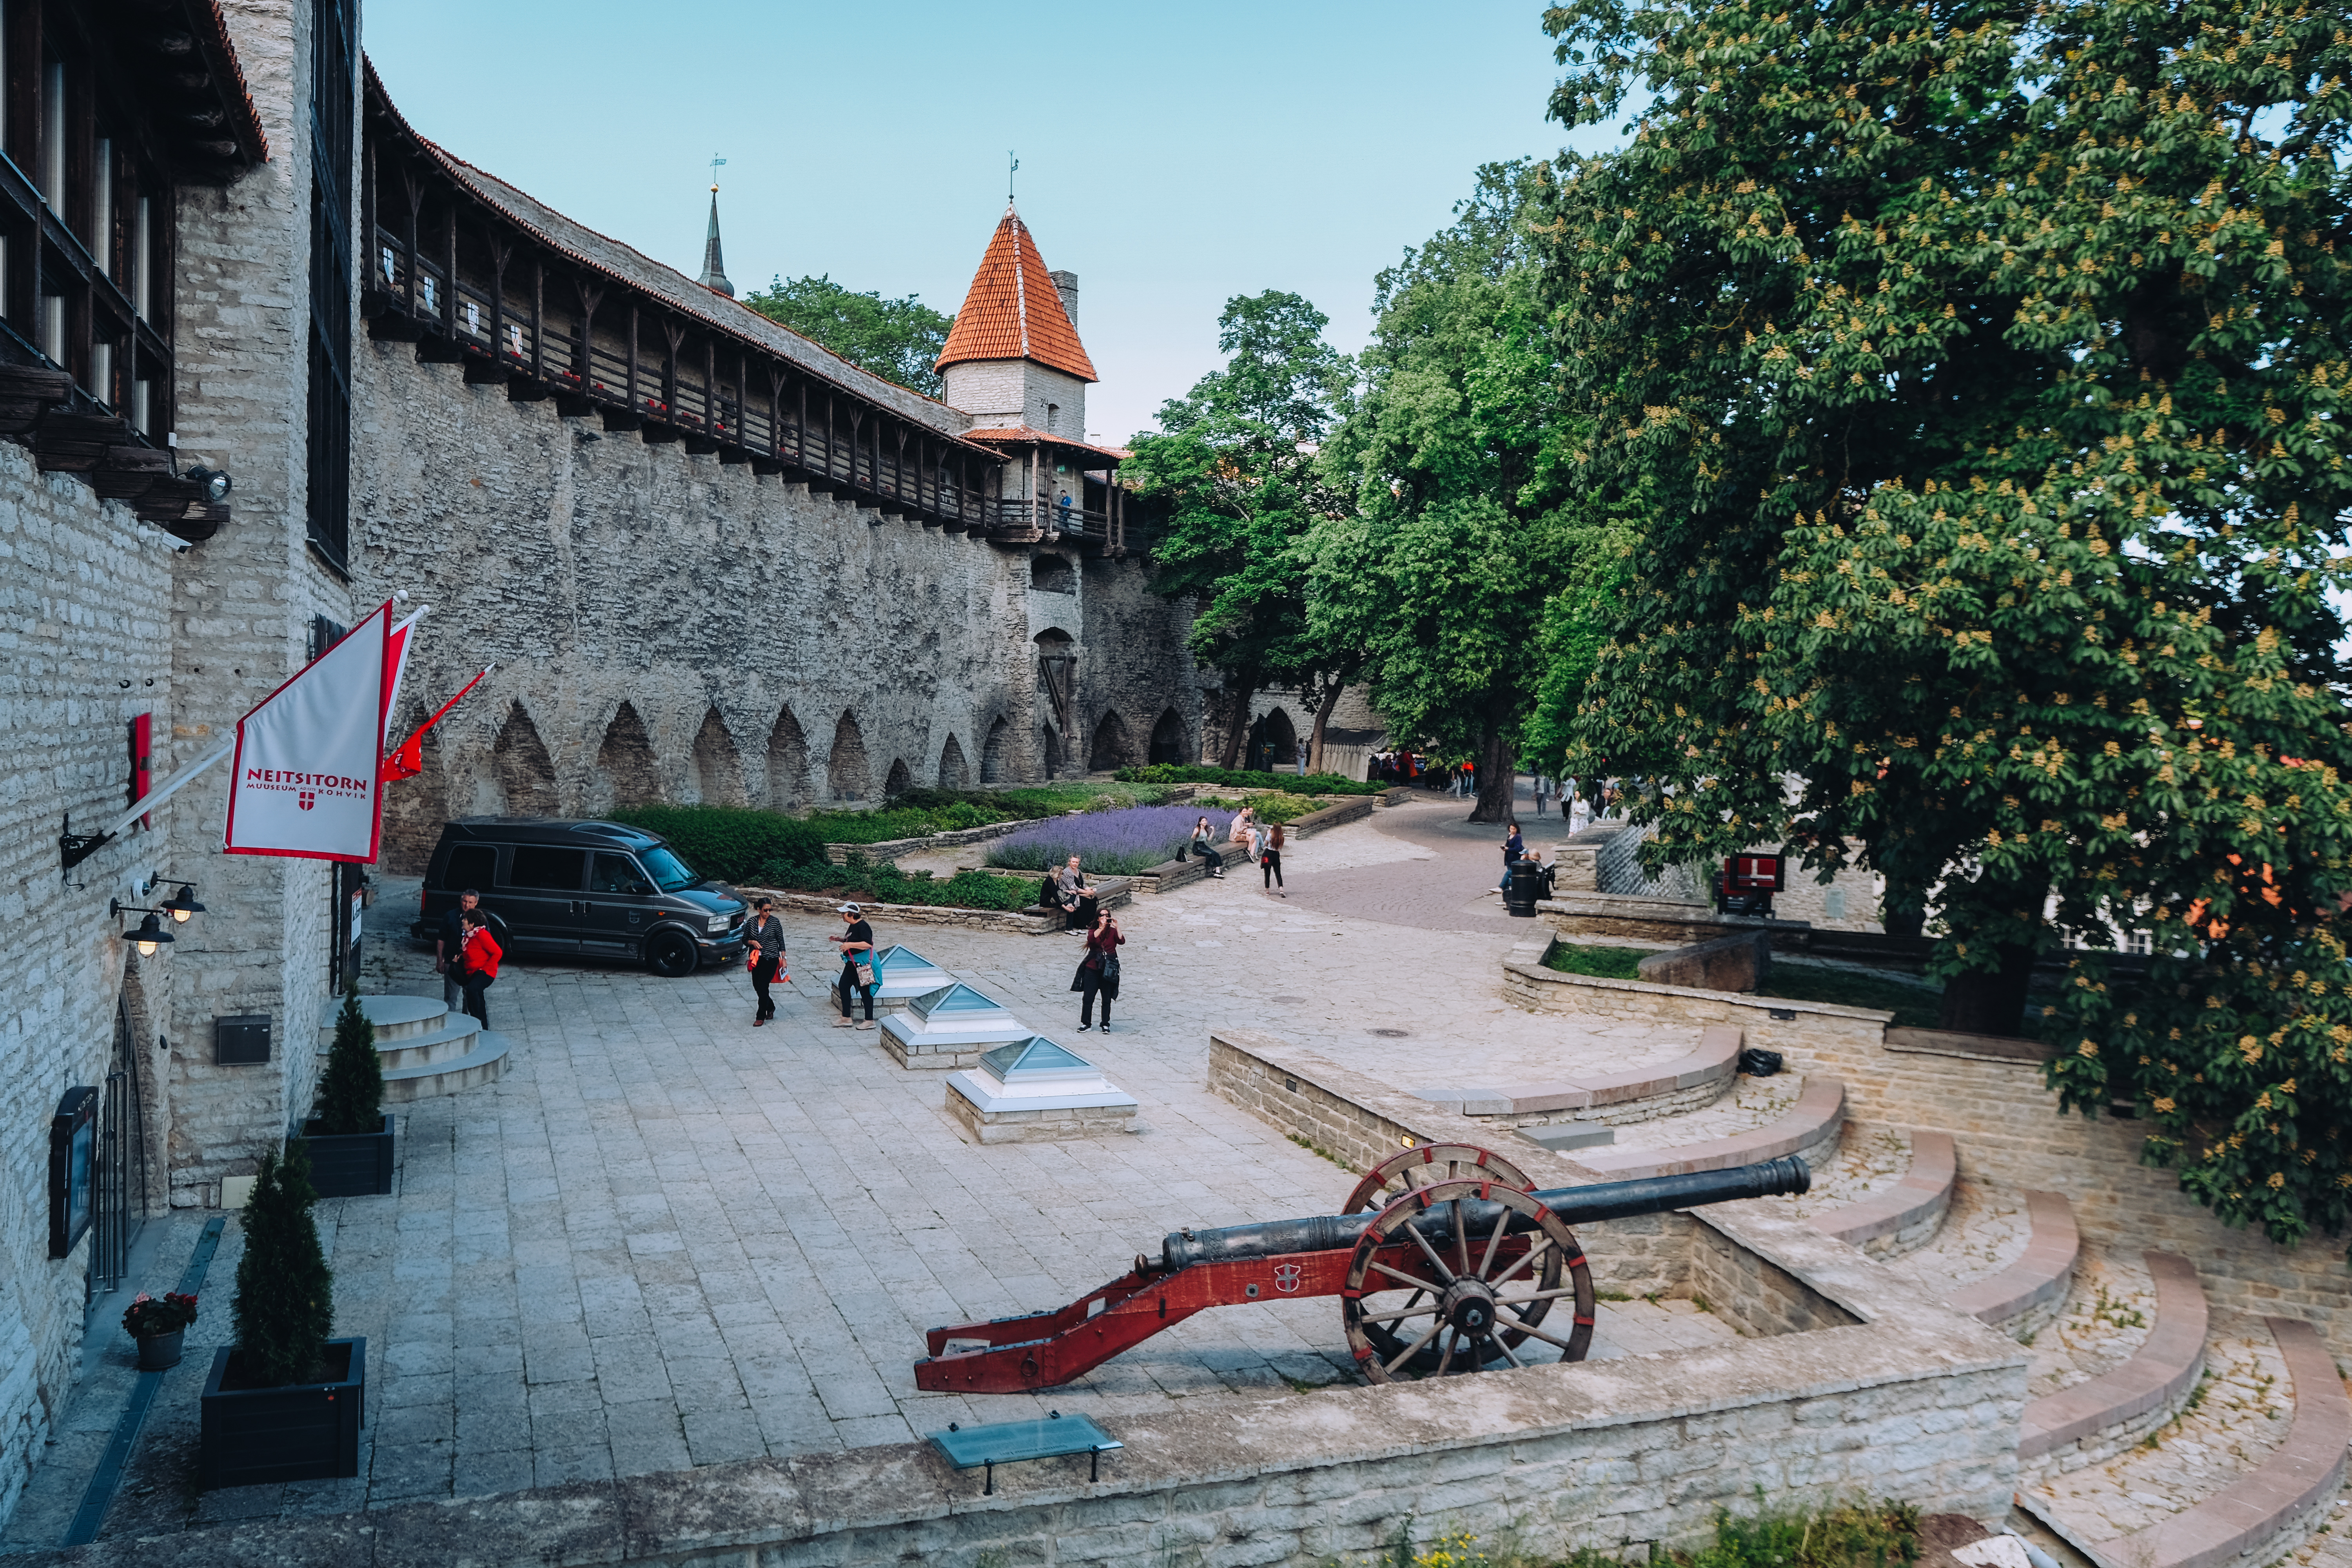 Vaade keskaegsele linnamüürile Kiek in de Köki kindlustustemuuseumist Tallinnas